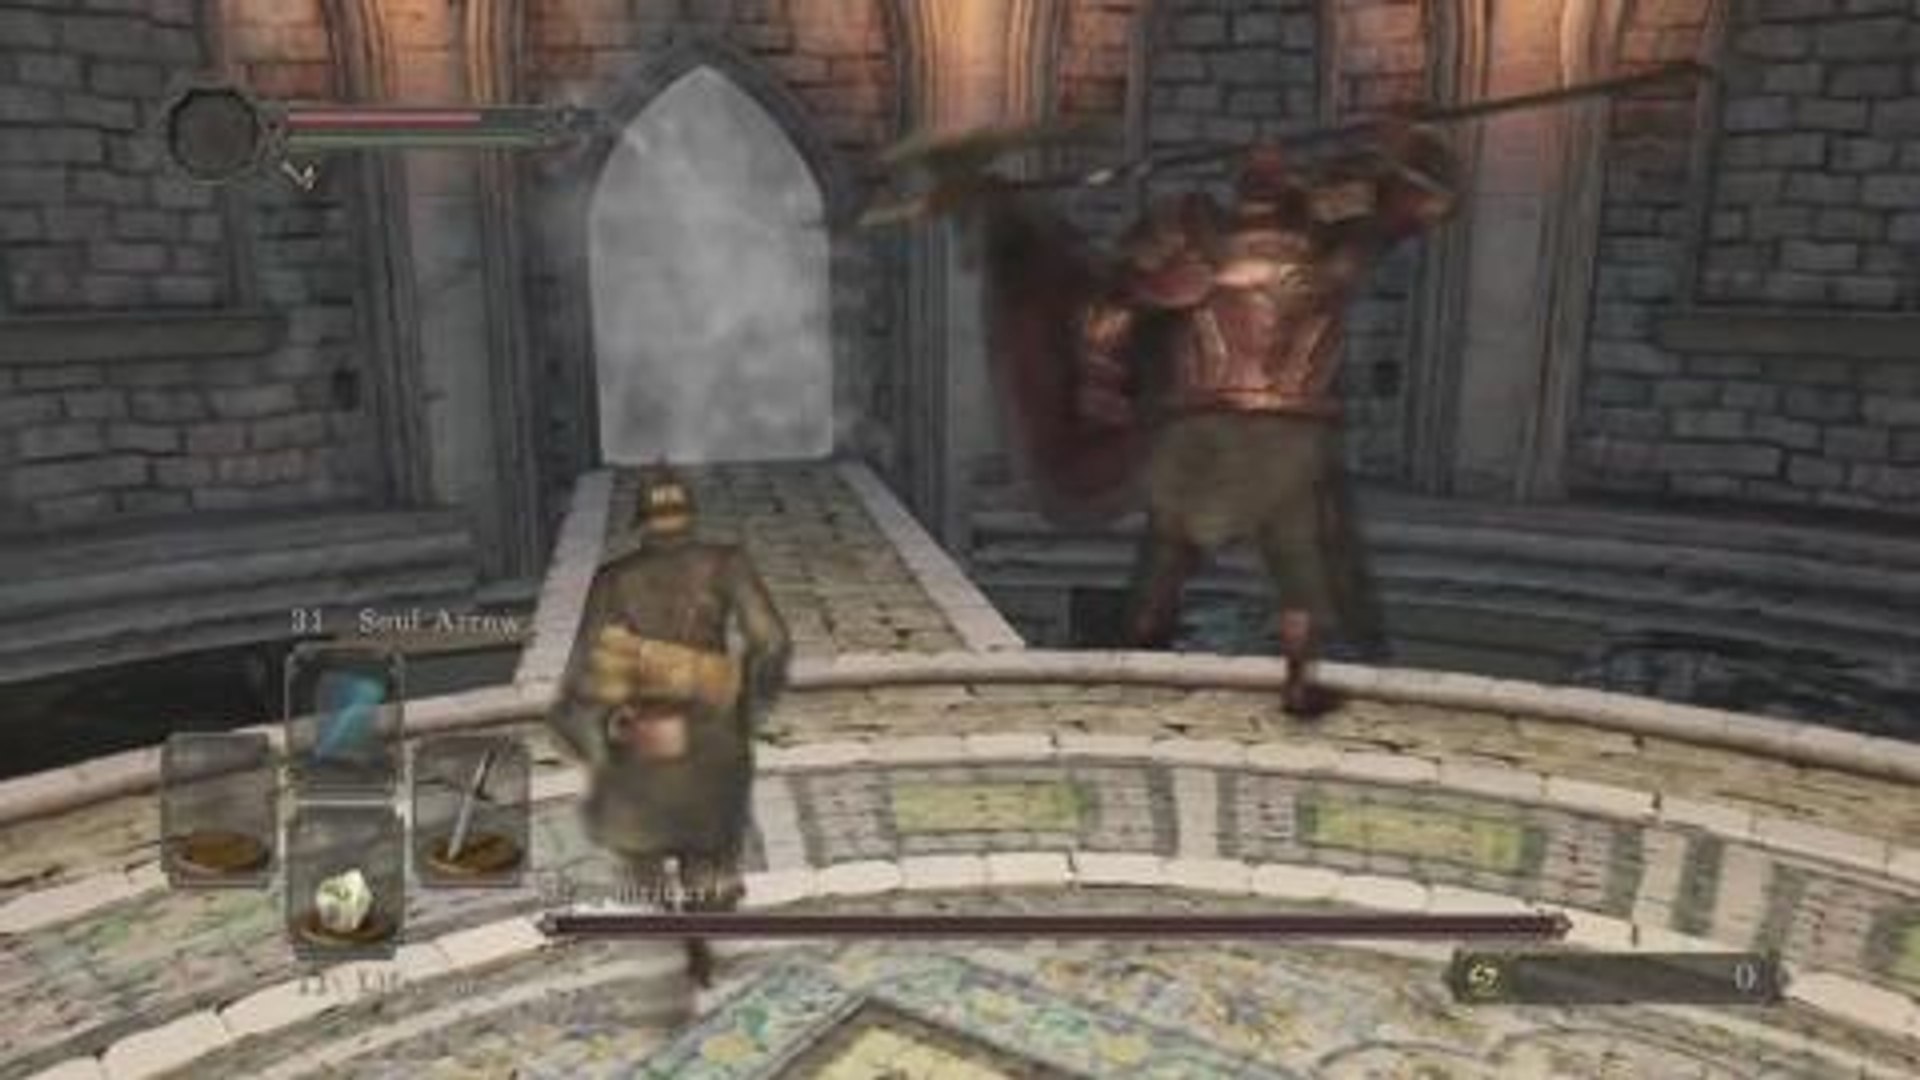 Dark Souls II paso a paso (I): hasta vencer al primer jefe